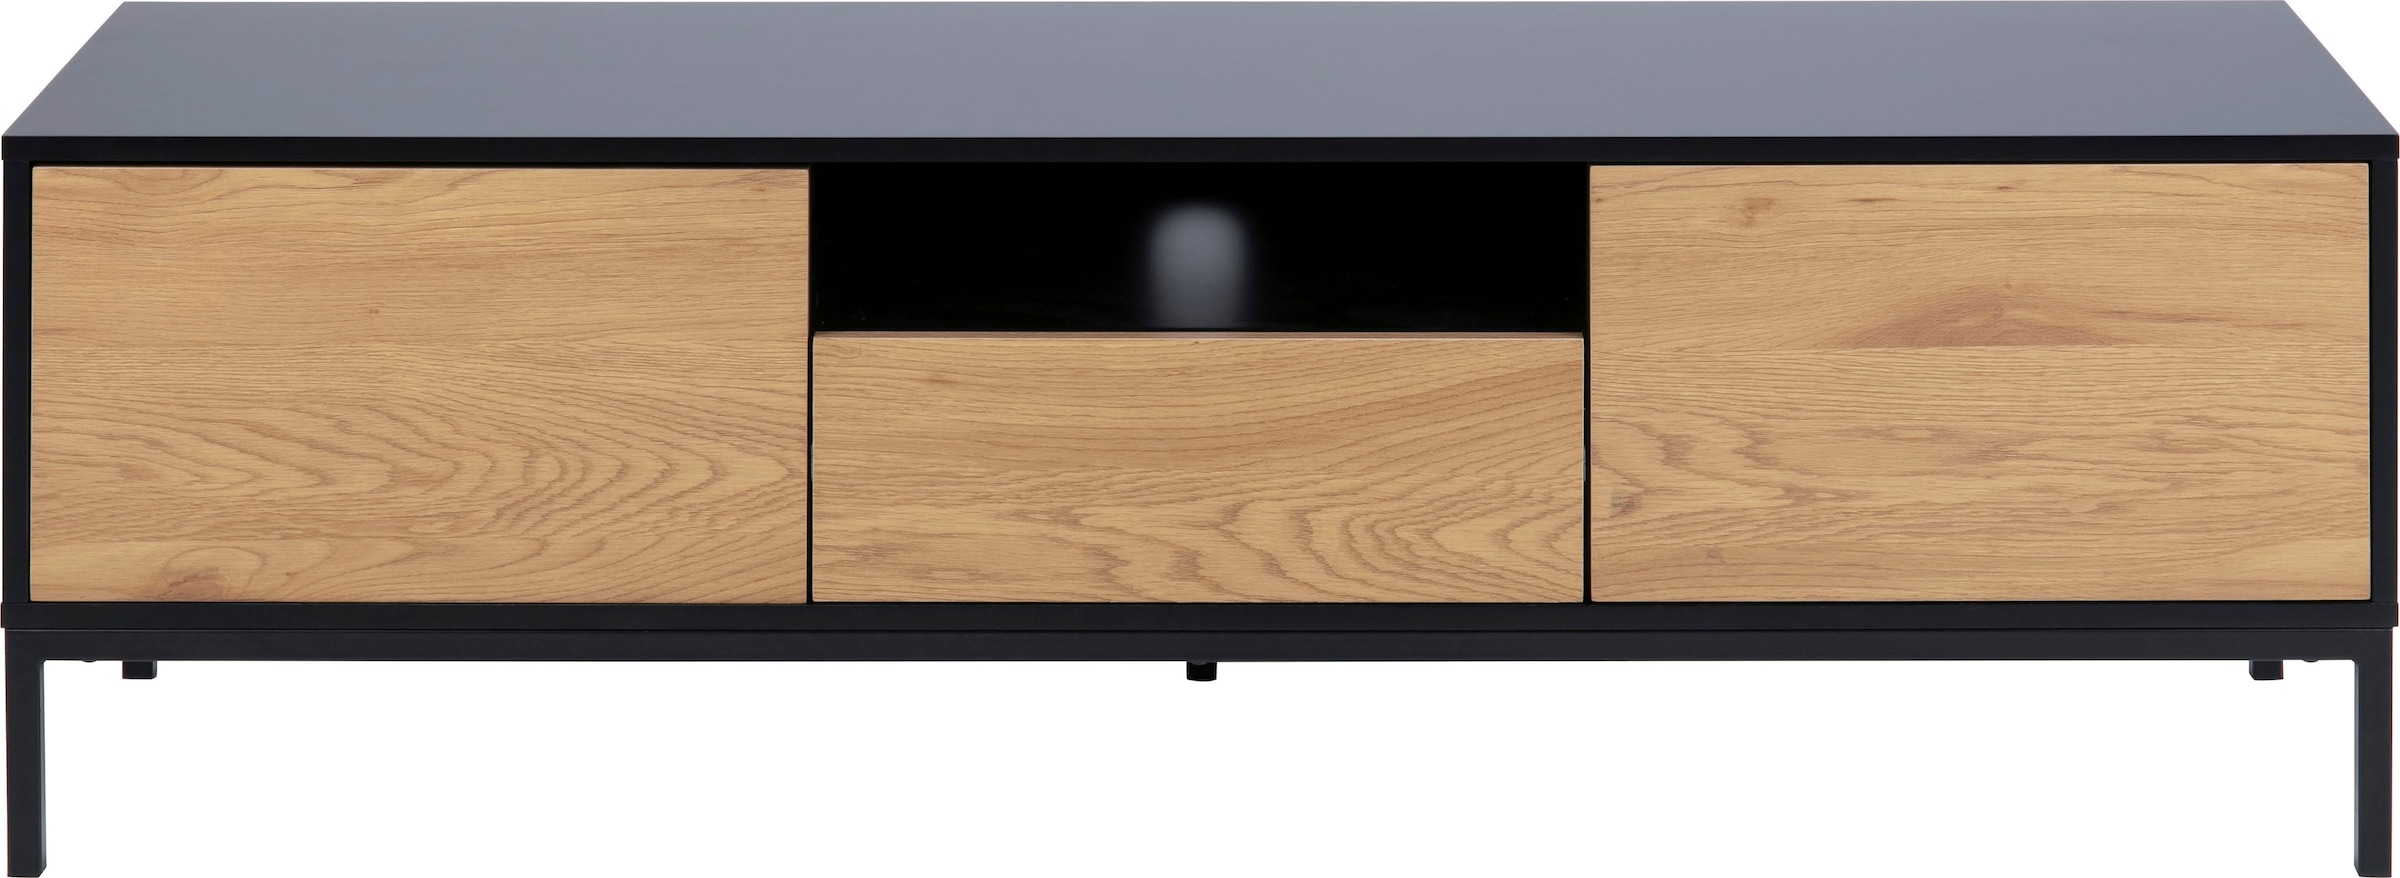 TV-Schrank, 1 Schublade, 1 offenem Fach und 2 geschlossenen Fächern, Breite 140 cm